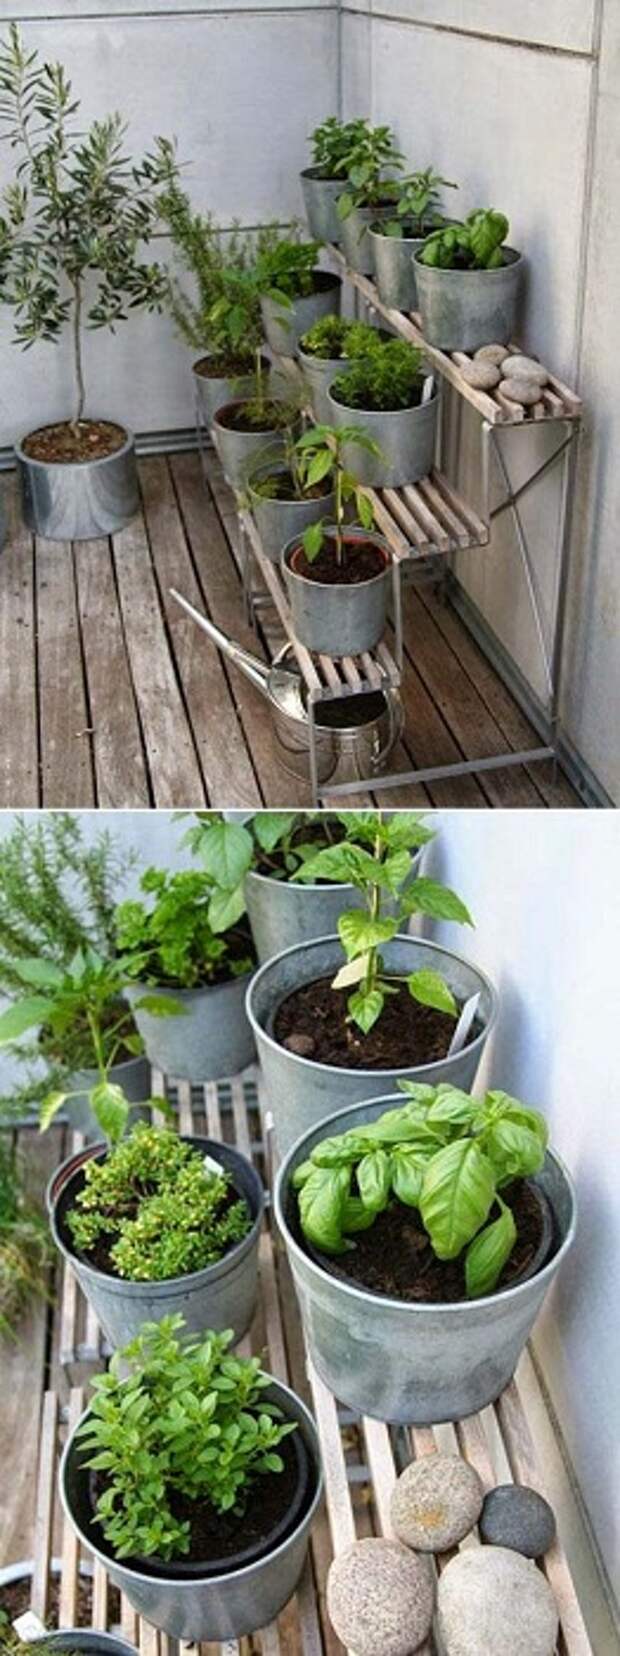 Симпатичное решение для того чтобы удобно обустроить мини-сад разместить его в ведрах одного размера.